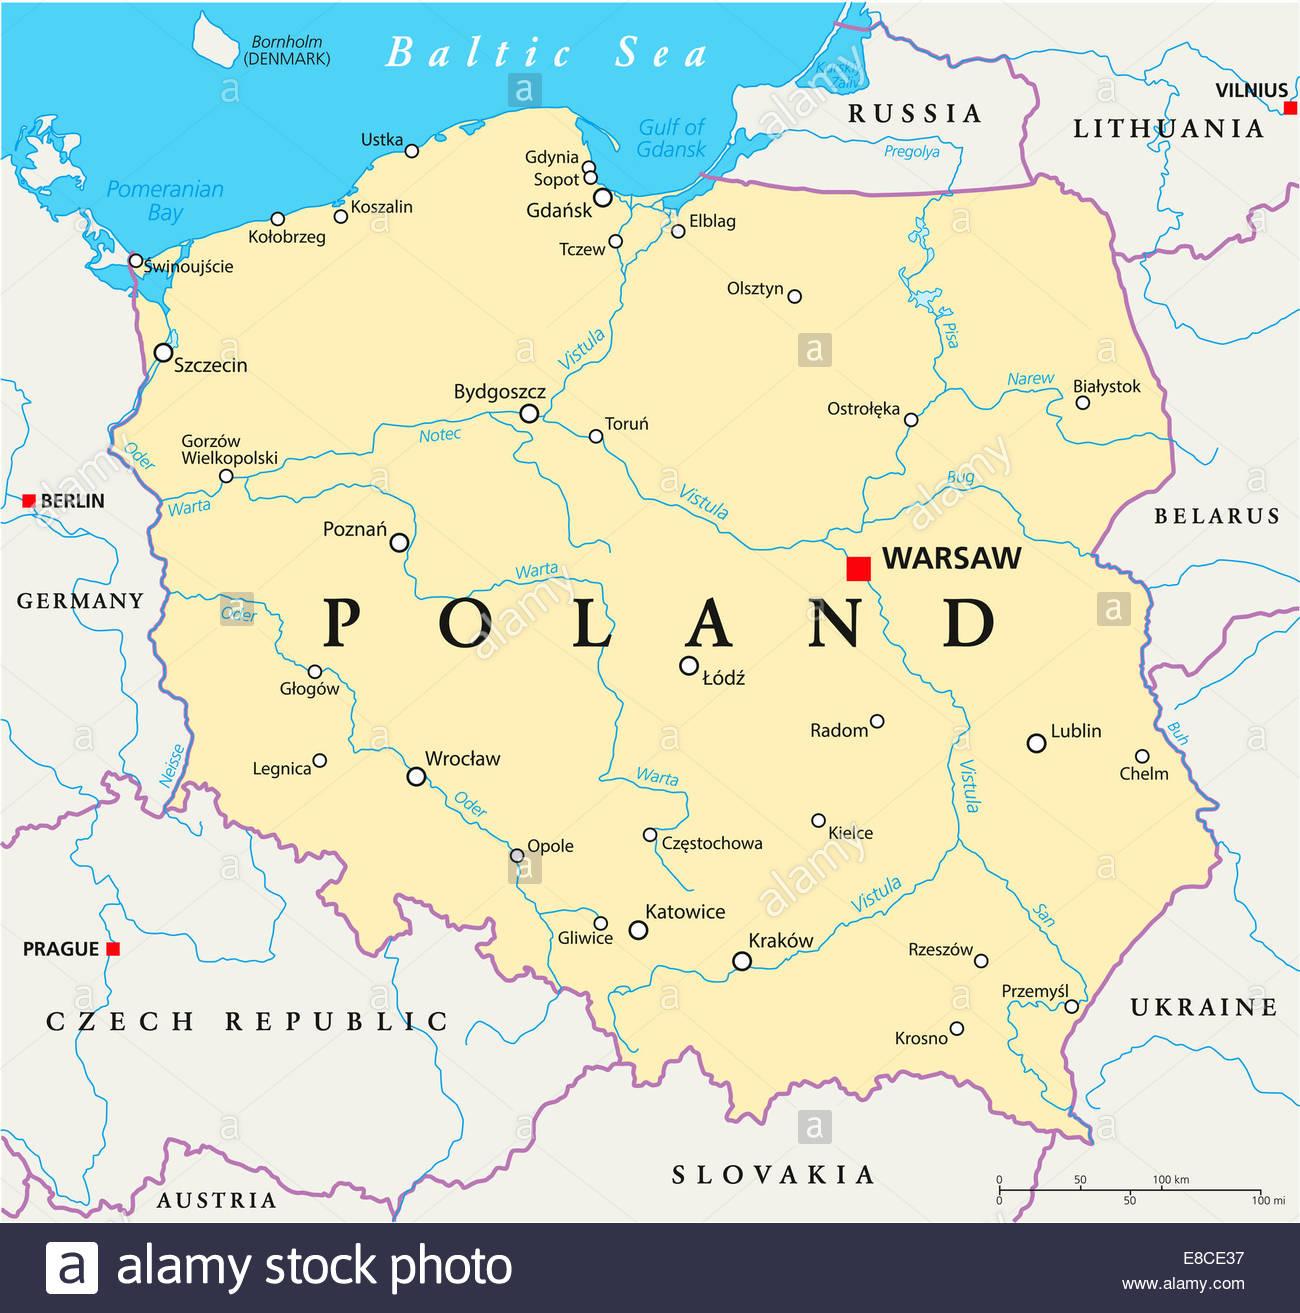 ワルシャワ世界地図 ワルシャワの場所が世界の地図 Masovia ポーランド